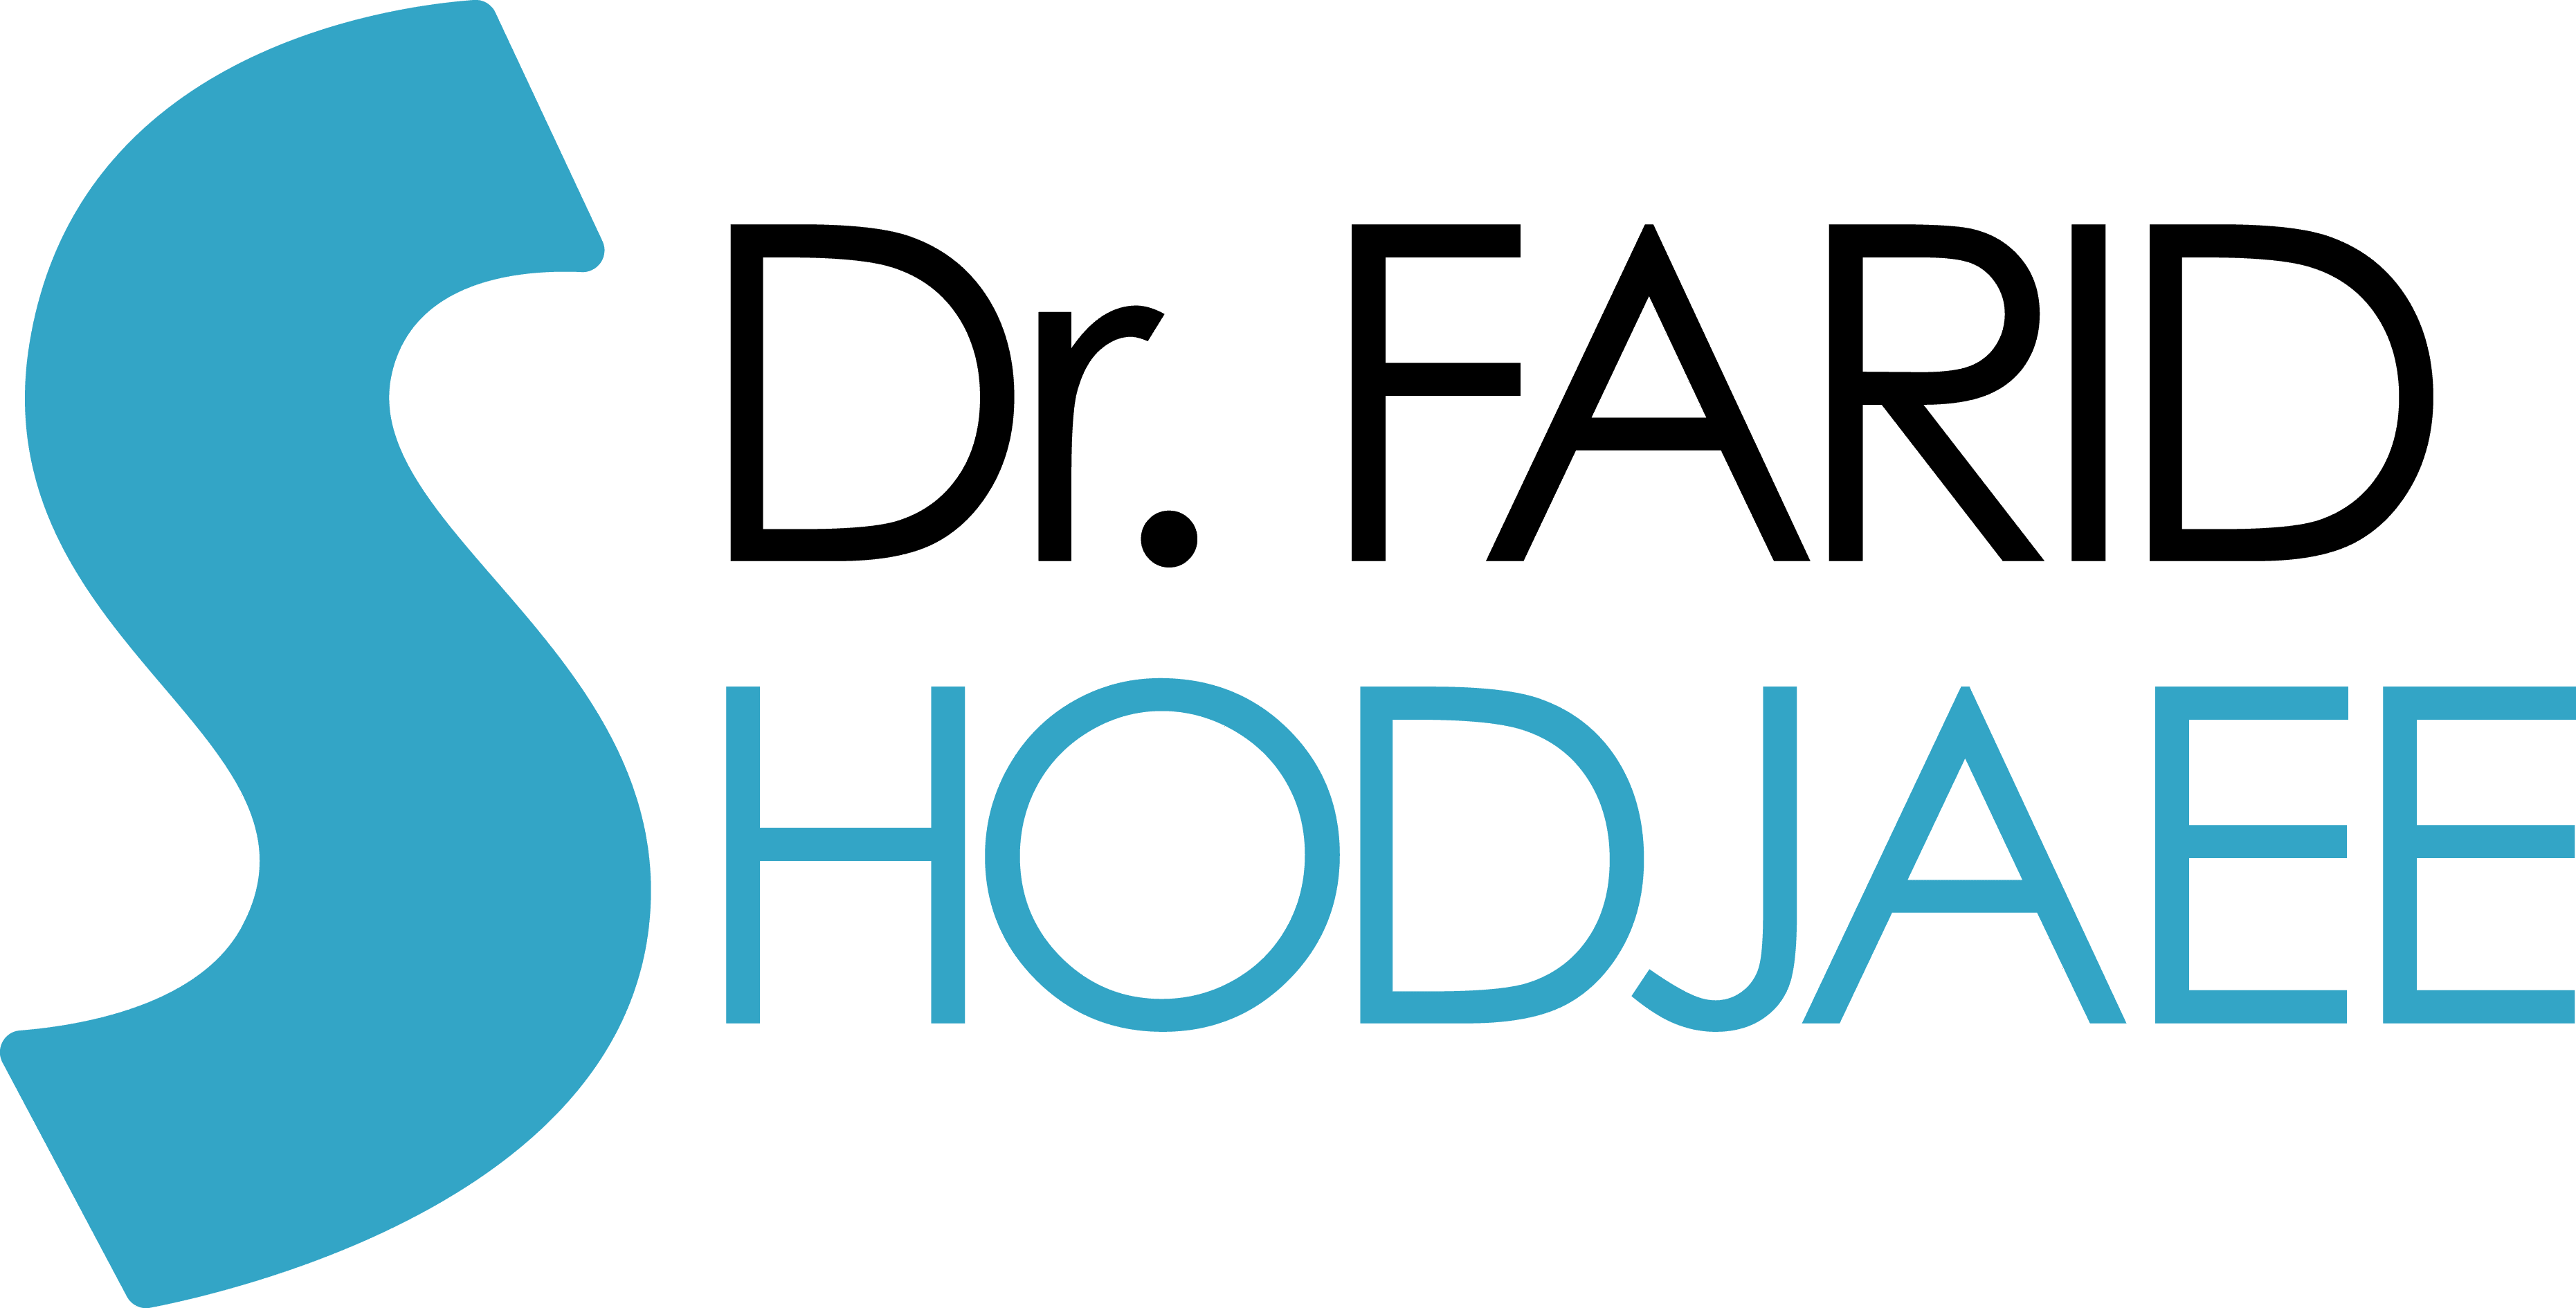 Dr. Farid Shodjaee